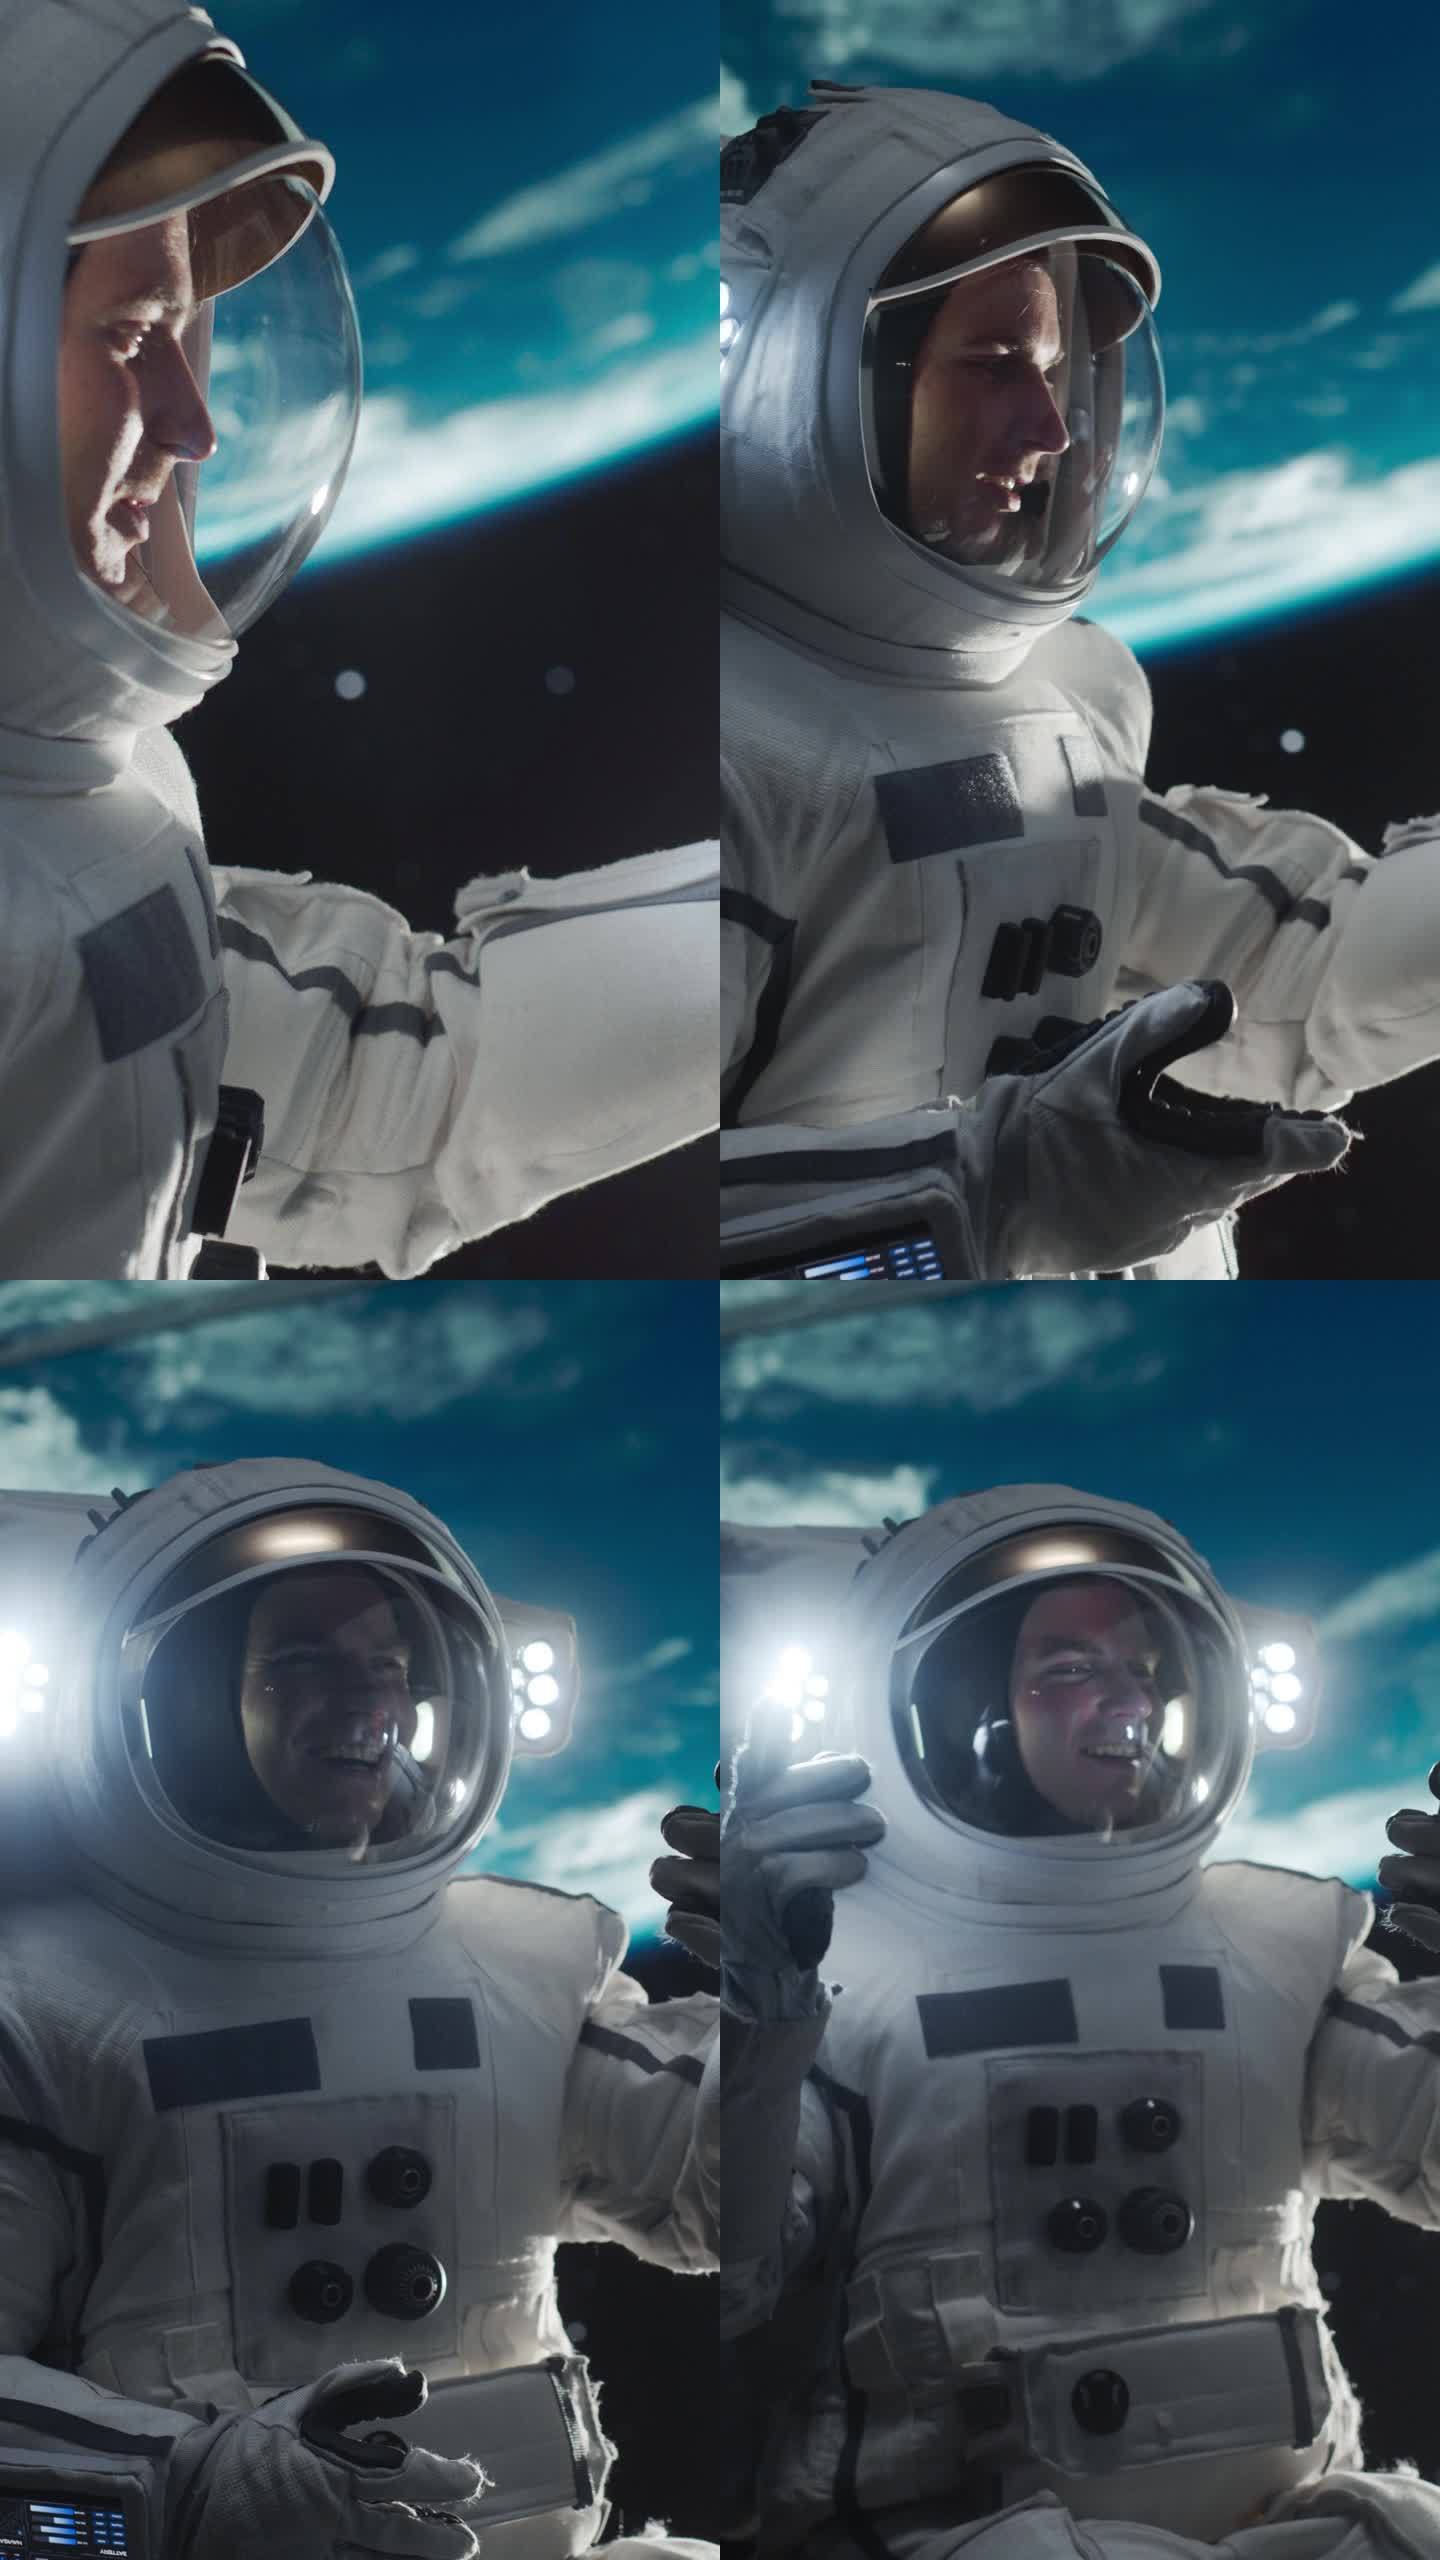 垂直屏幕:穿着太空服的兴奋男子在外太空与女友通话，旁边是一颗卫星。宇航员用智能手机与一位年轻女性进行